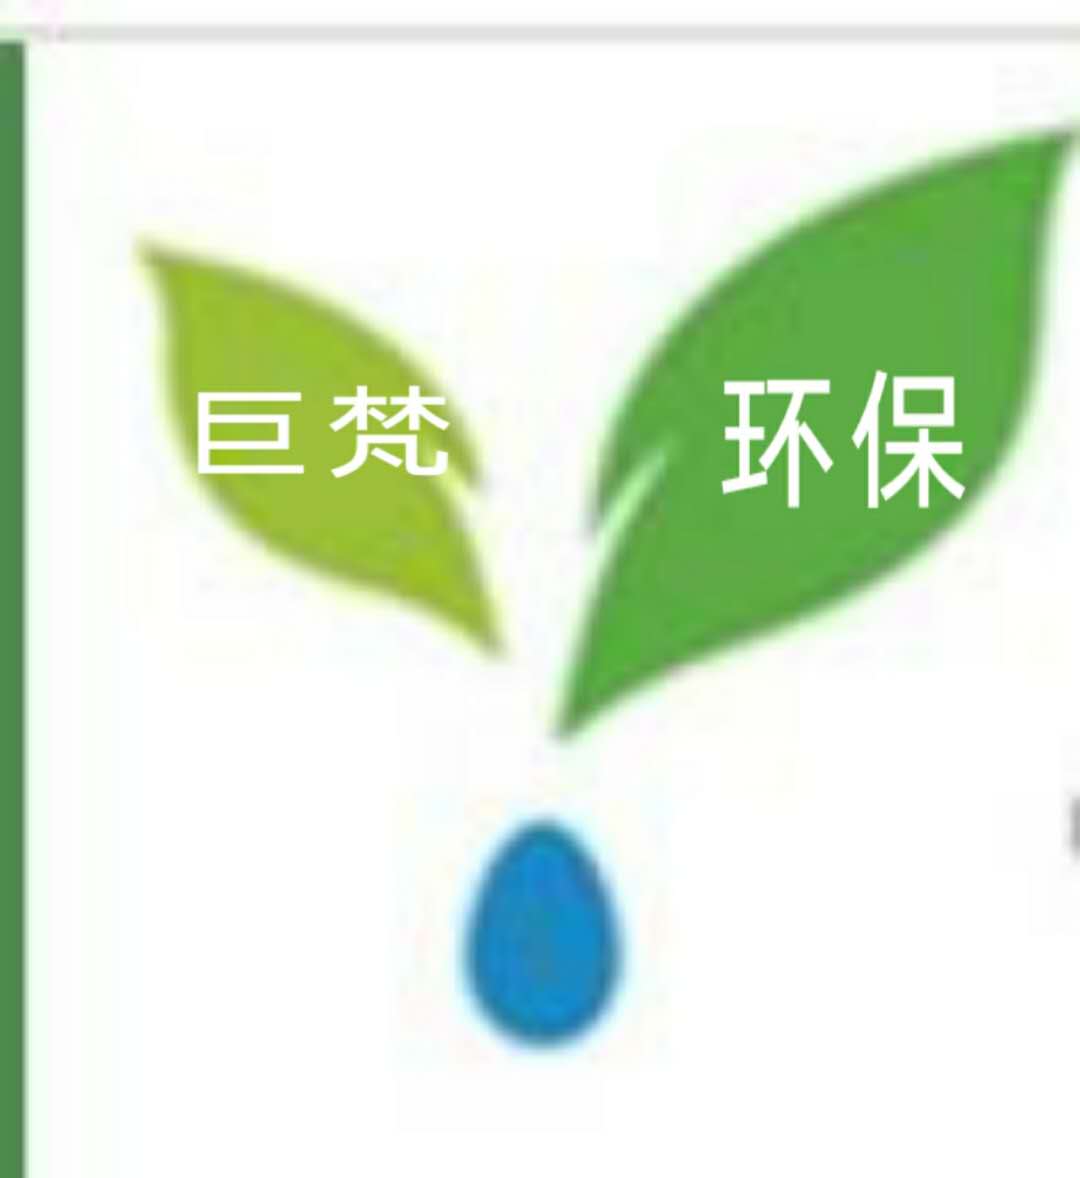 上海巨梵环保工程有限公司